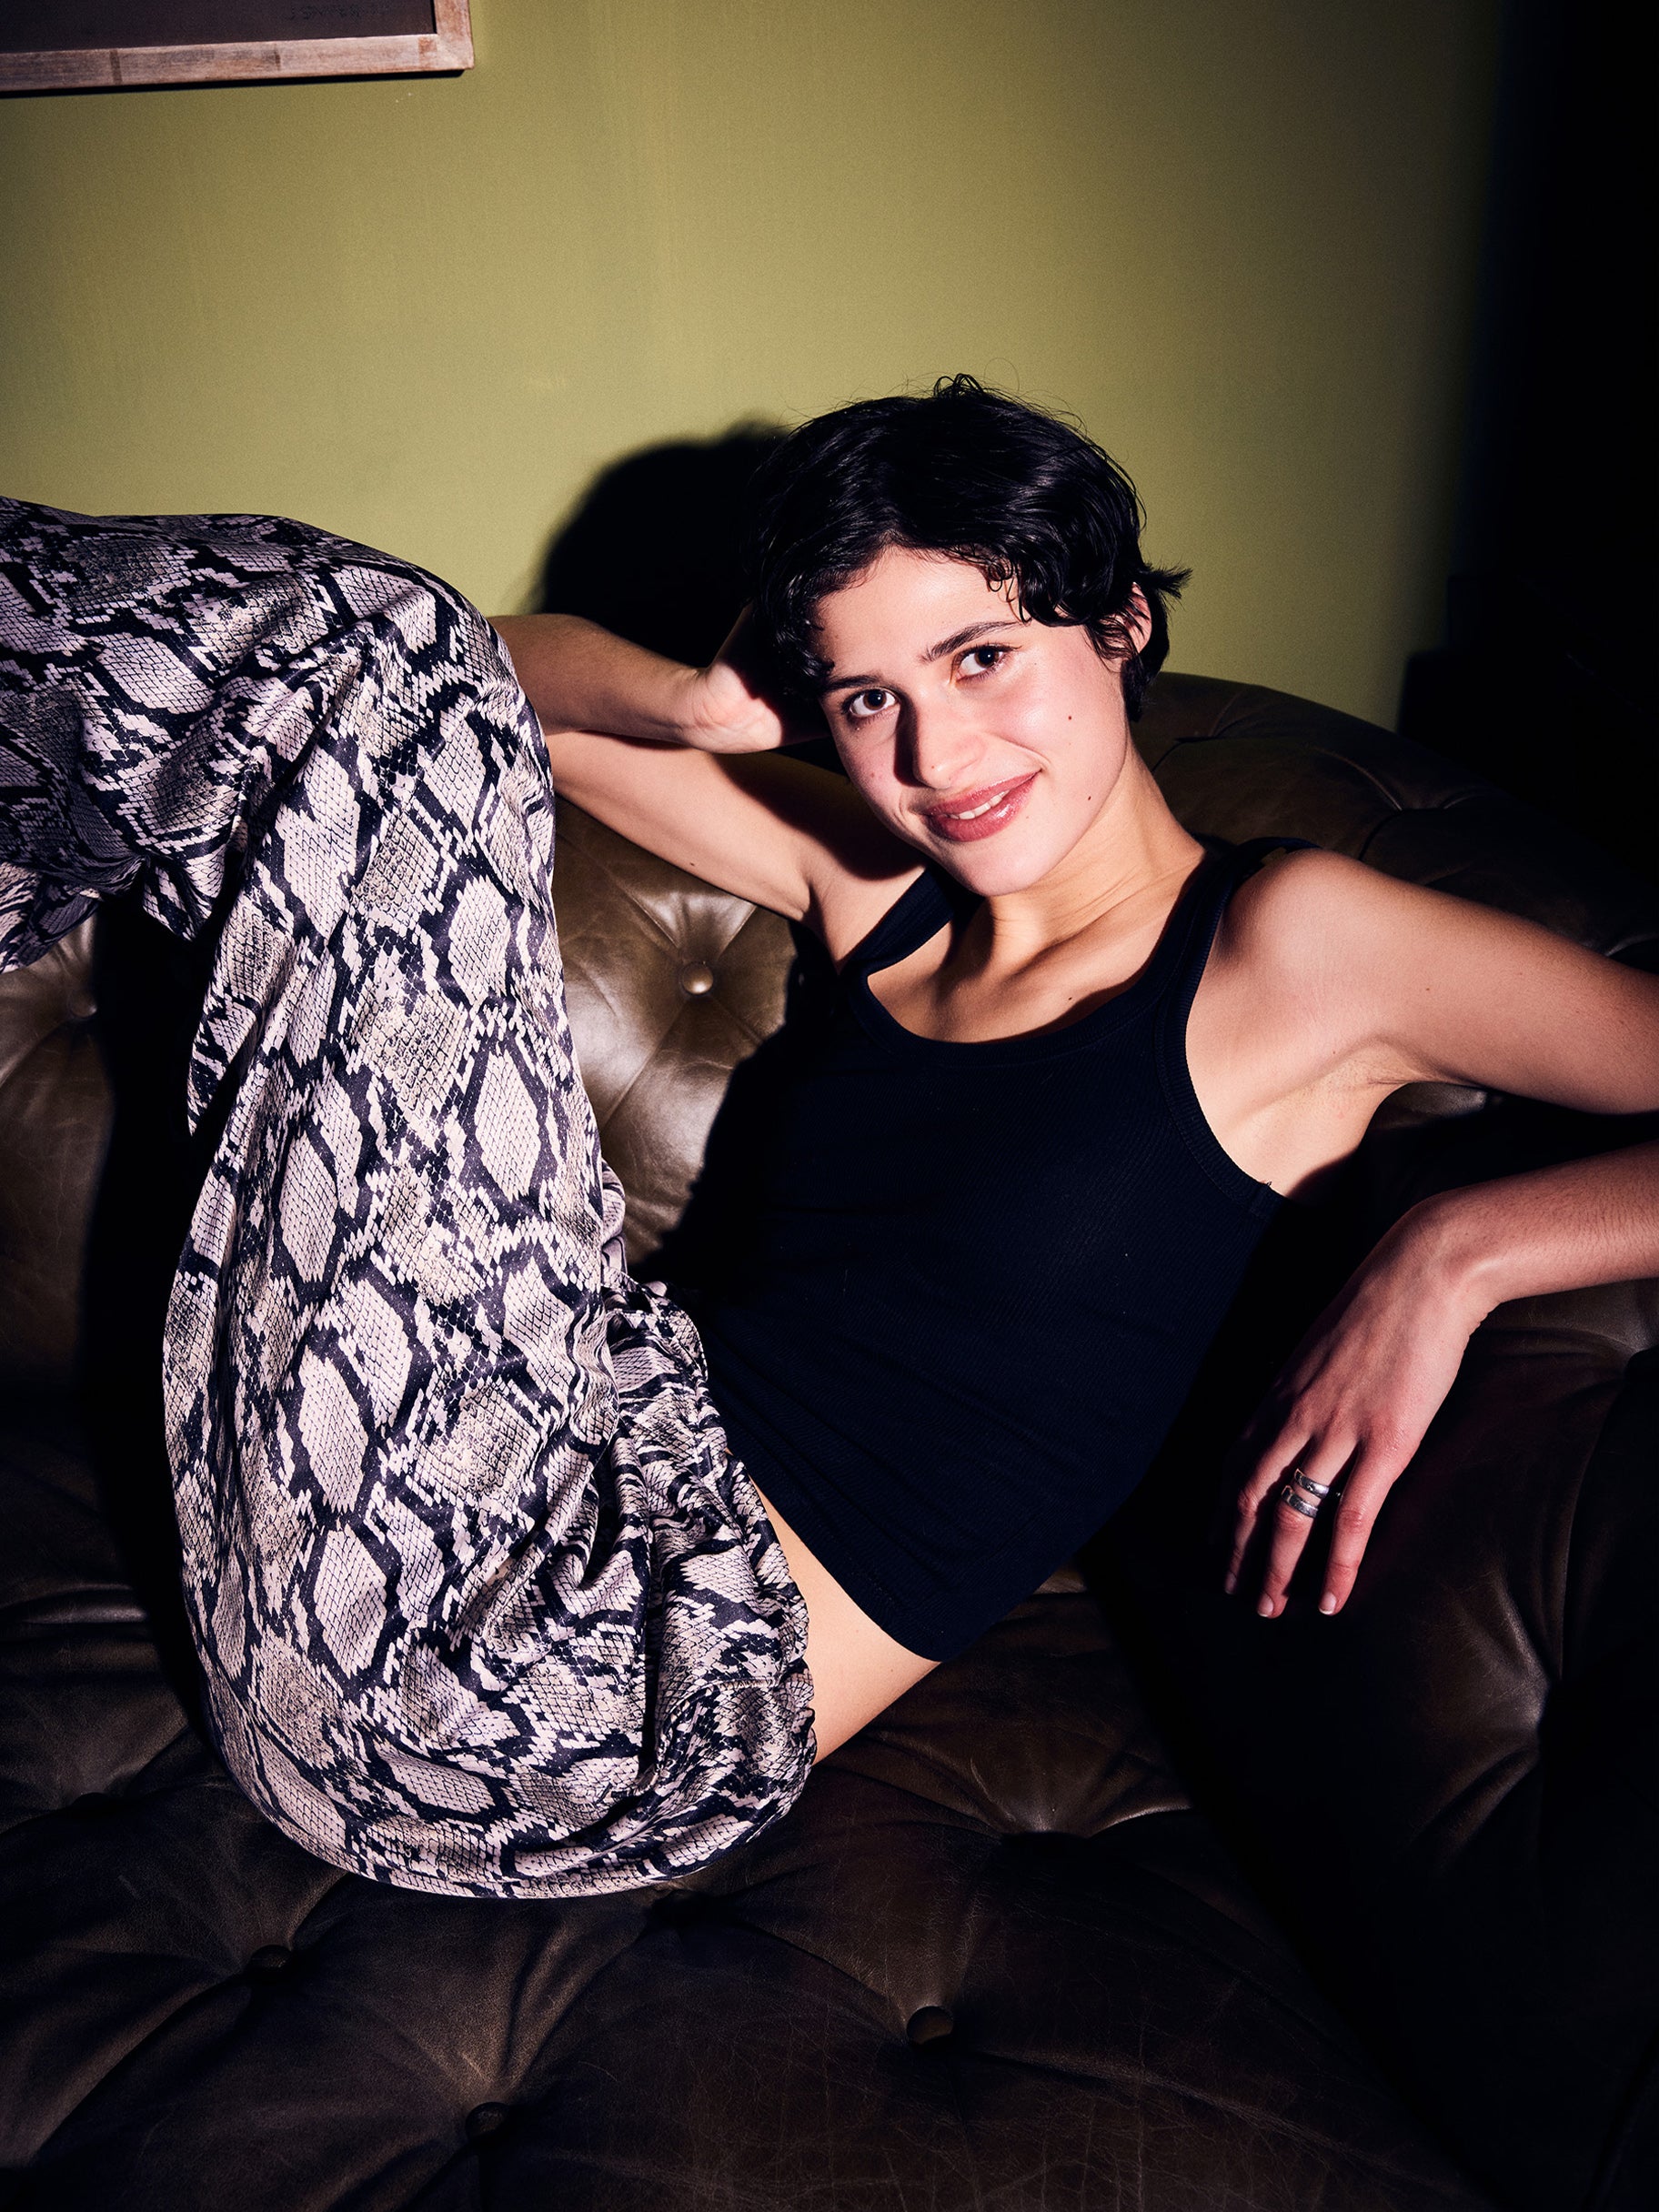 Lockere Pyjamahose mit Schlangen Design an sitzender Frau